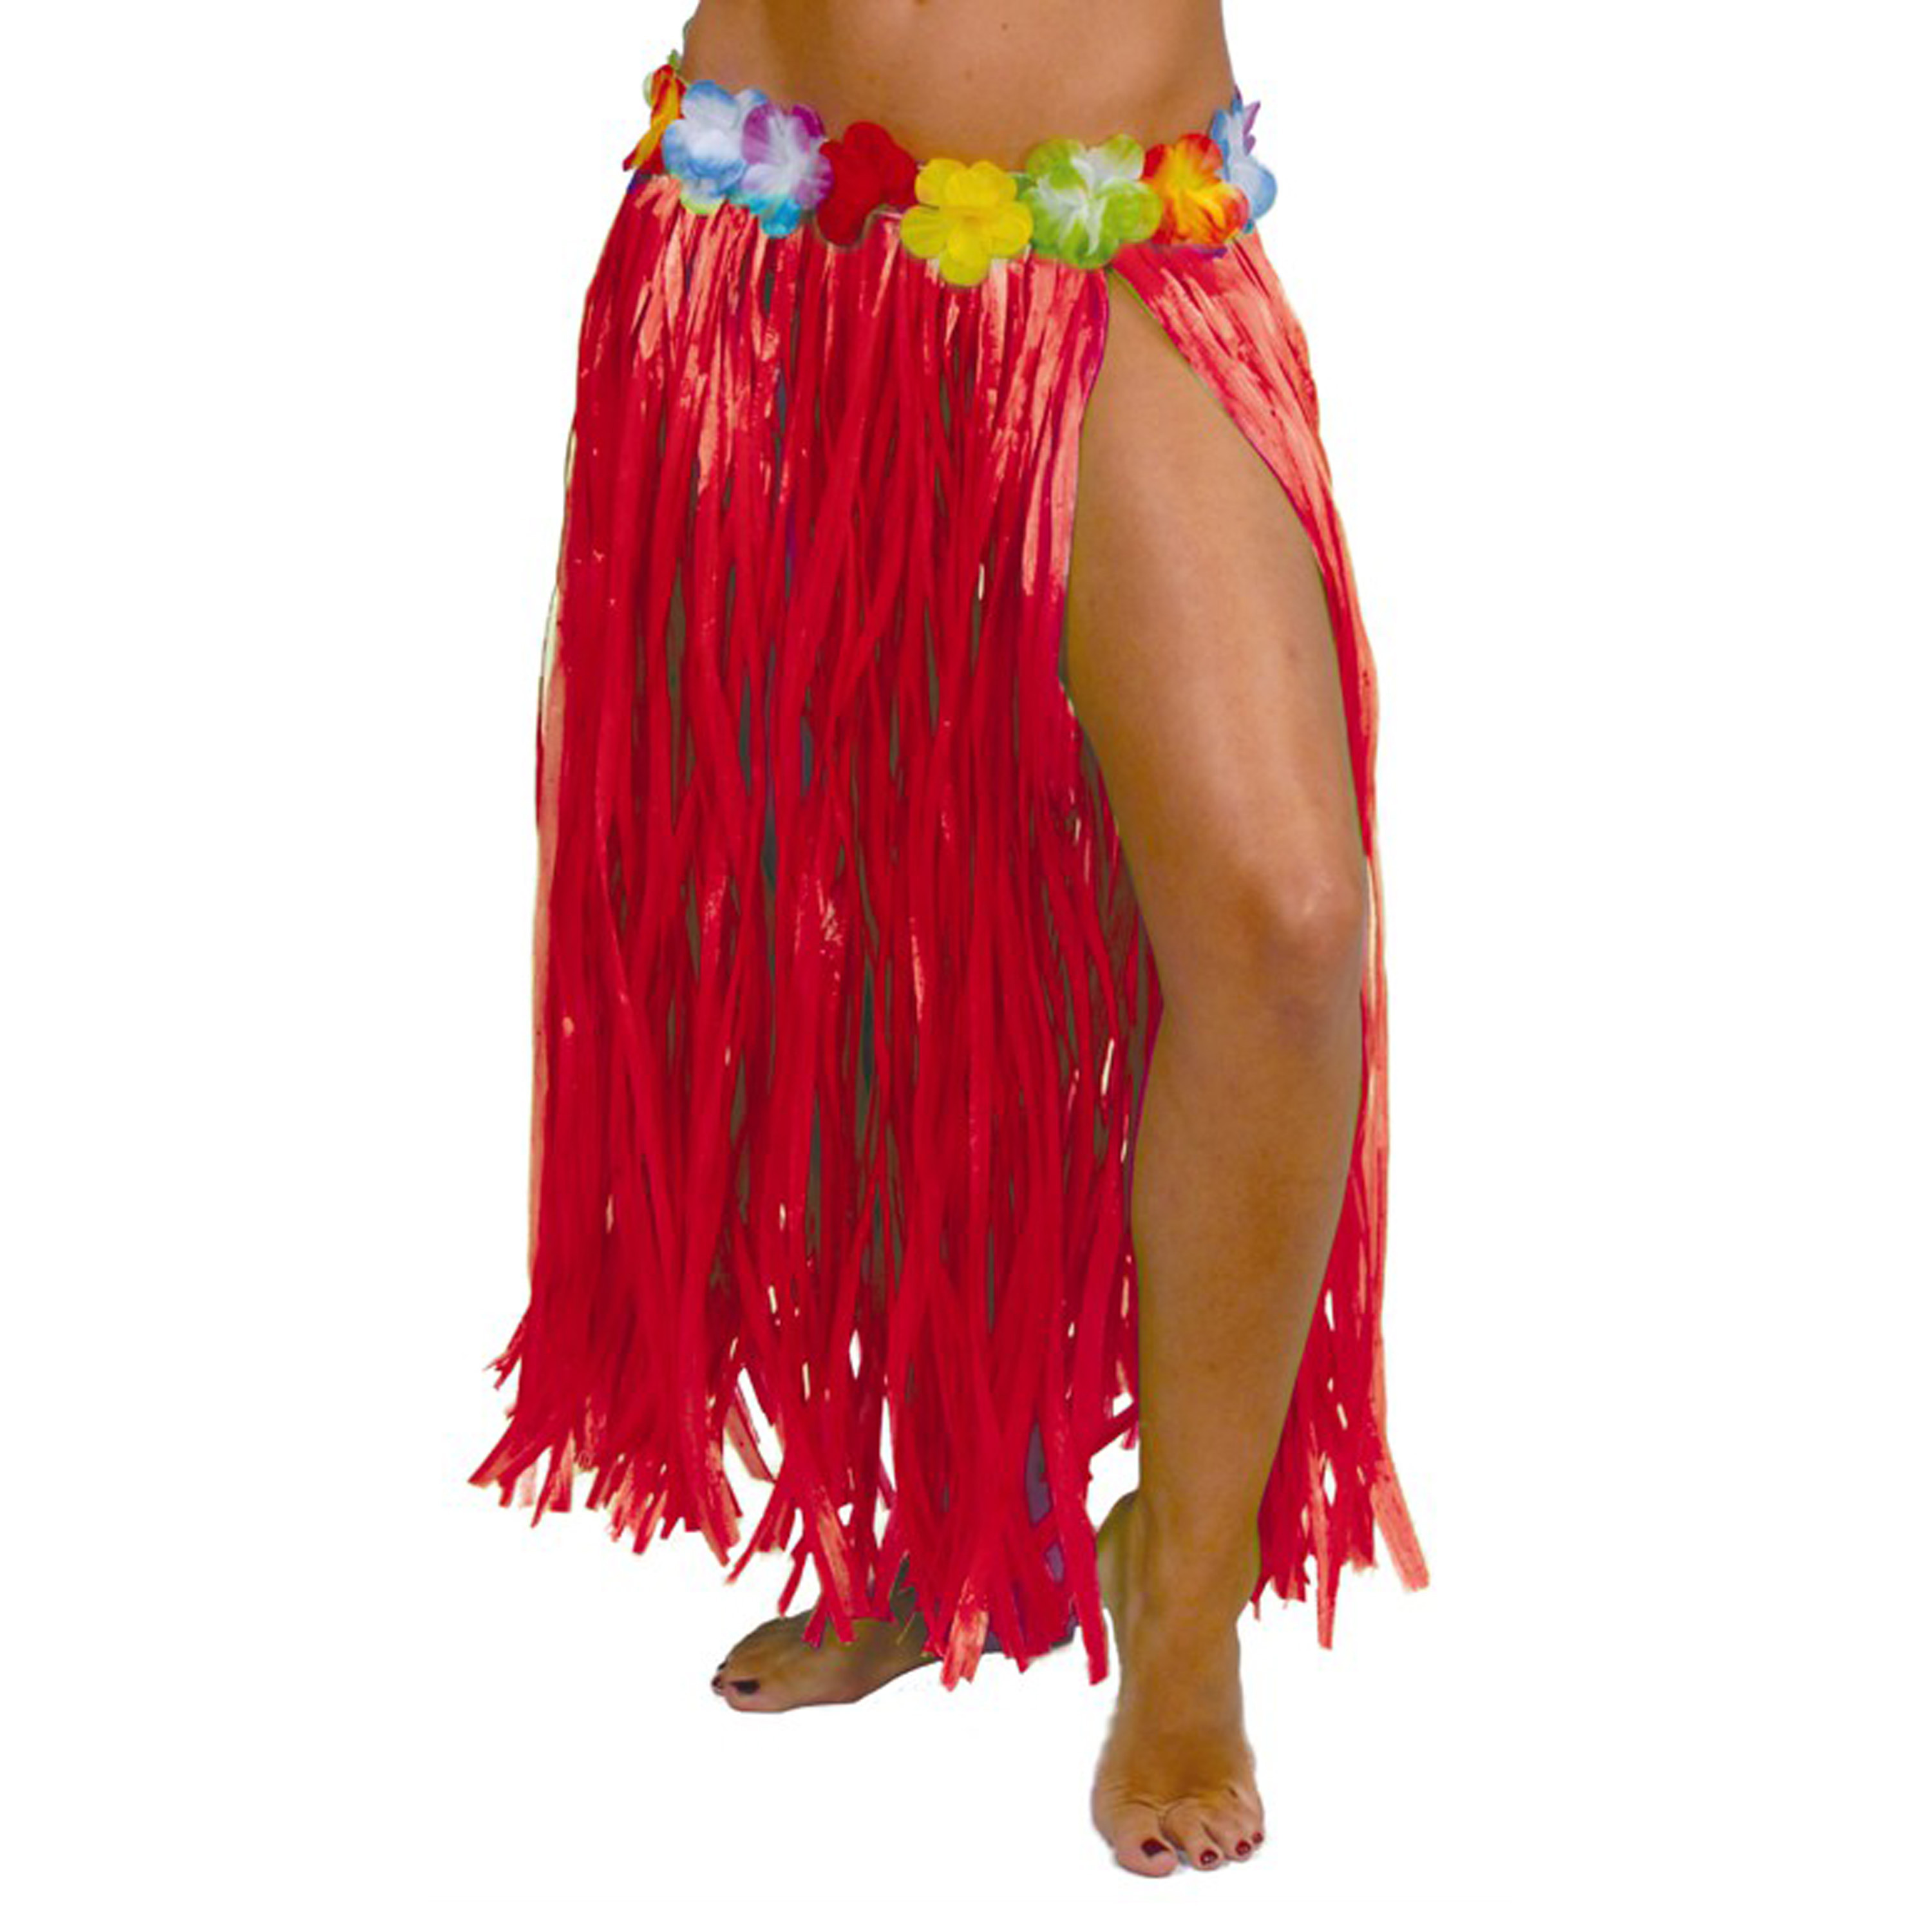 Toppers Hawaii verkleed rokje voor volwassenen rood 75 cm rieten hoela rokje tropisch